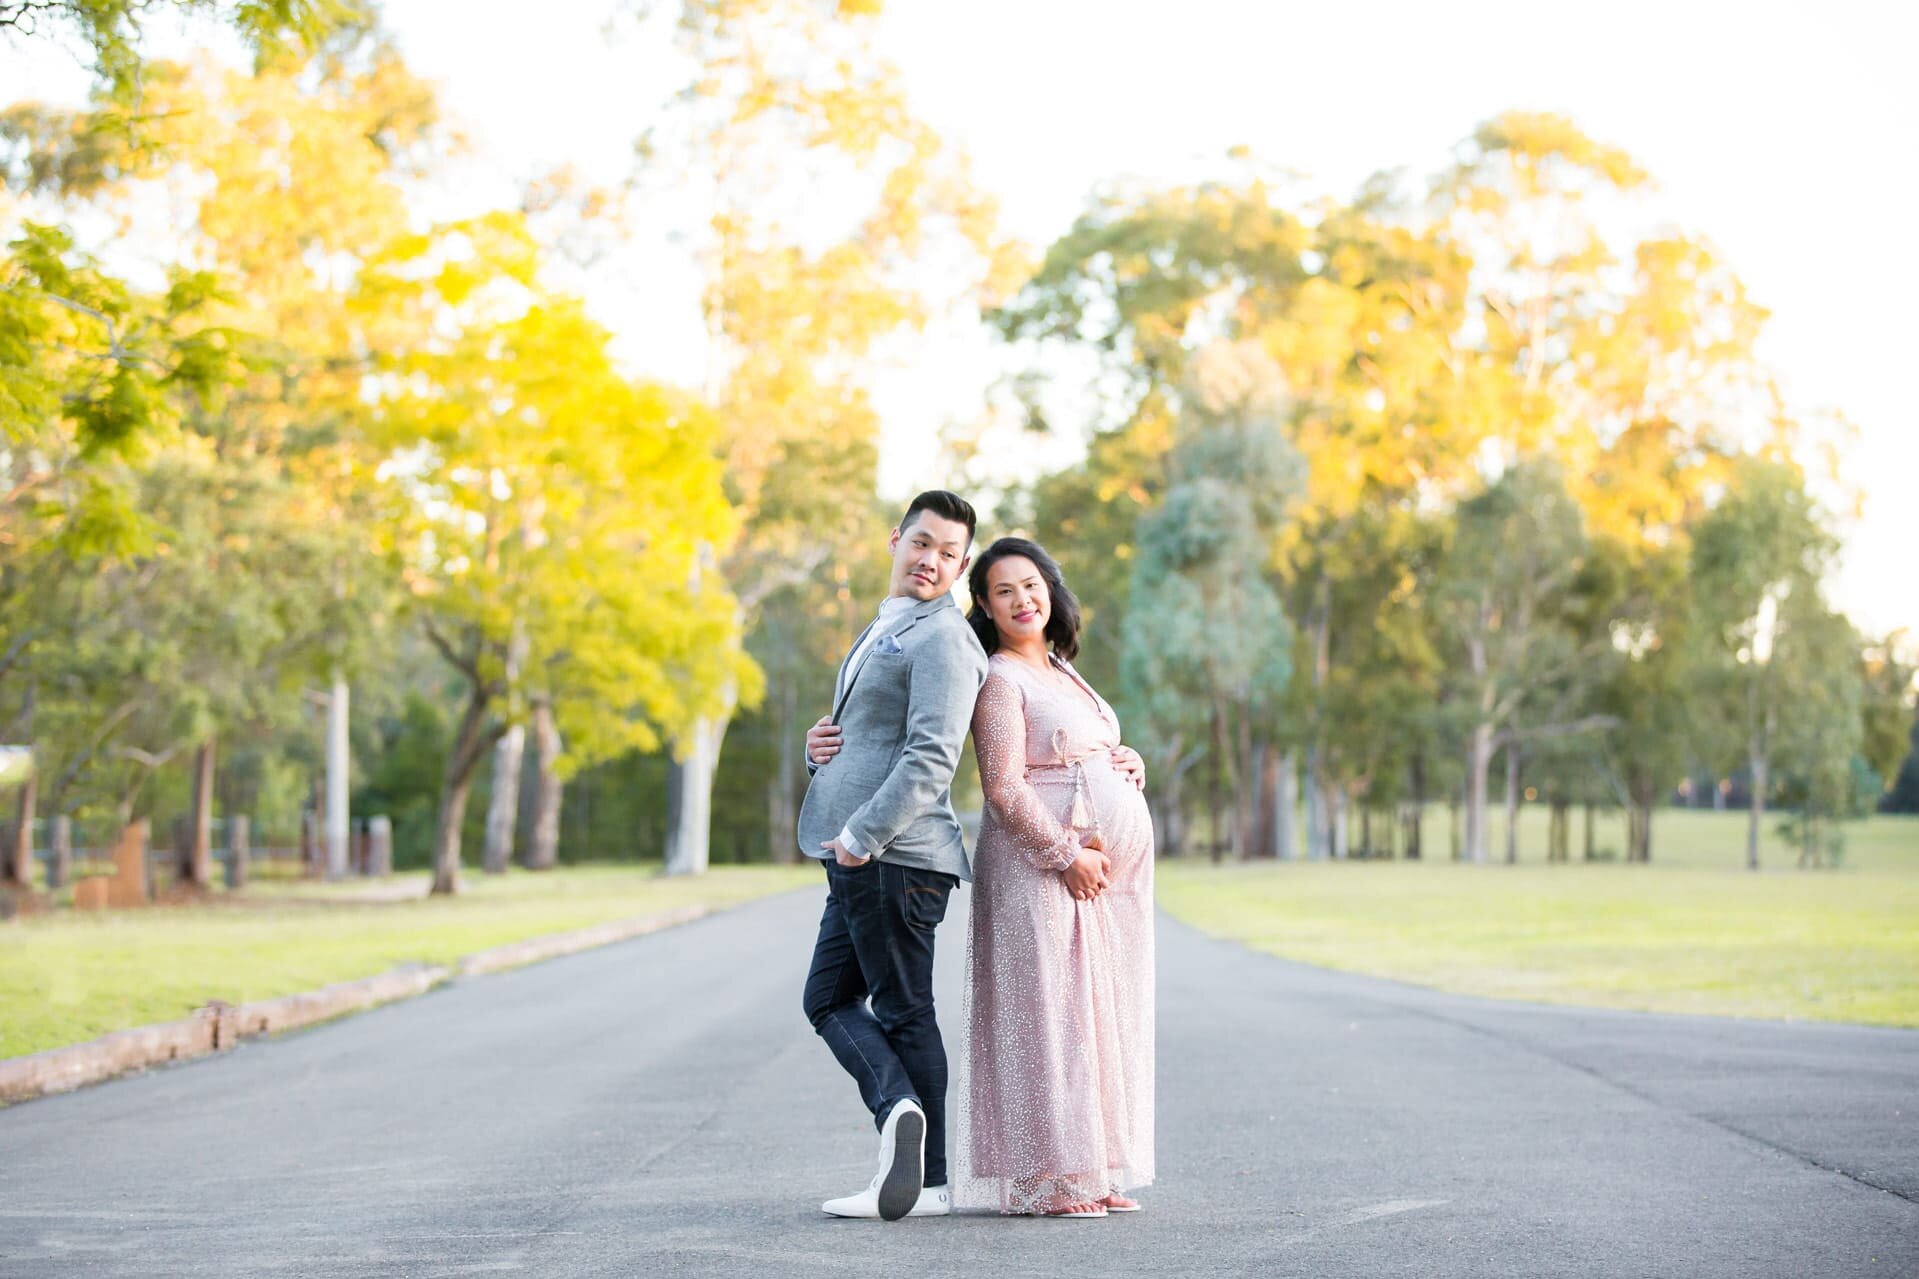 Sydney-maternity-photoshoot-outdoors-Parramatta-Park-(26).jpg